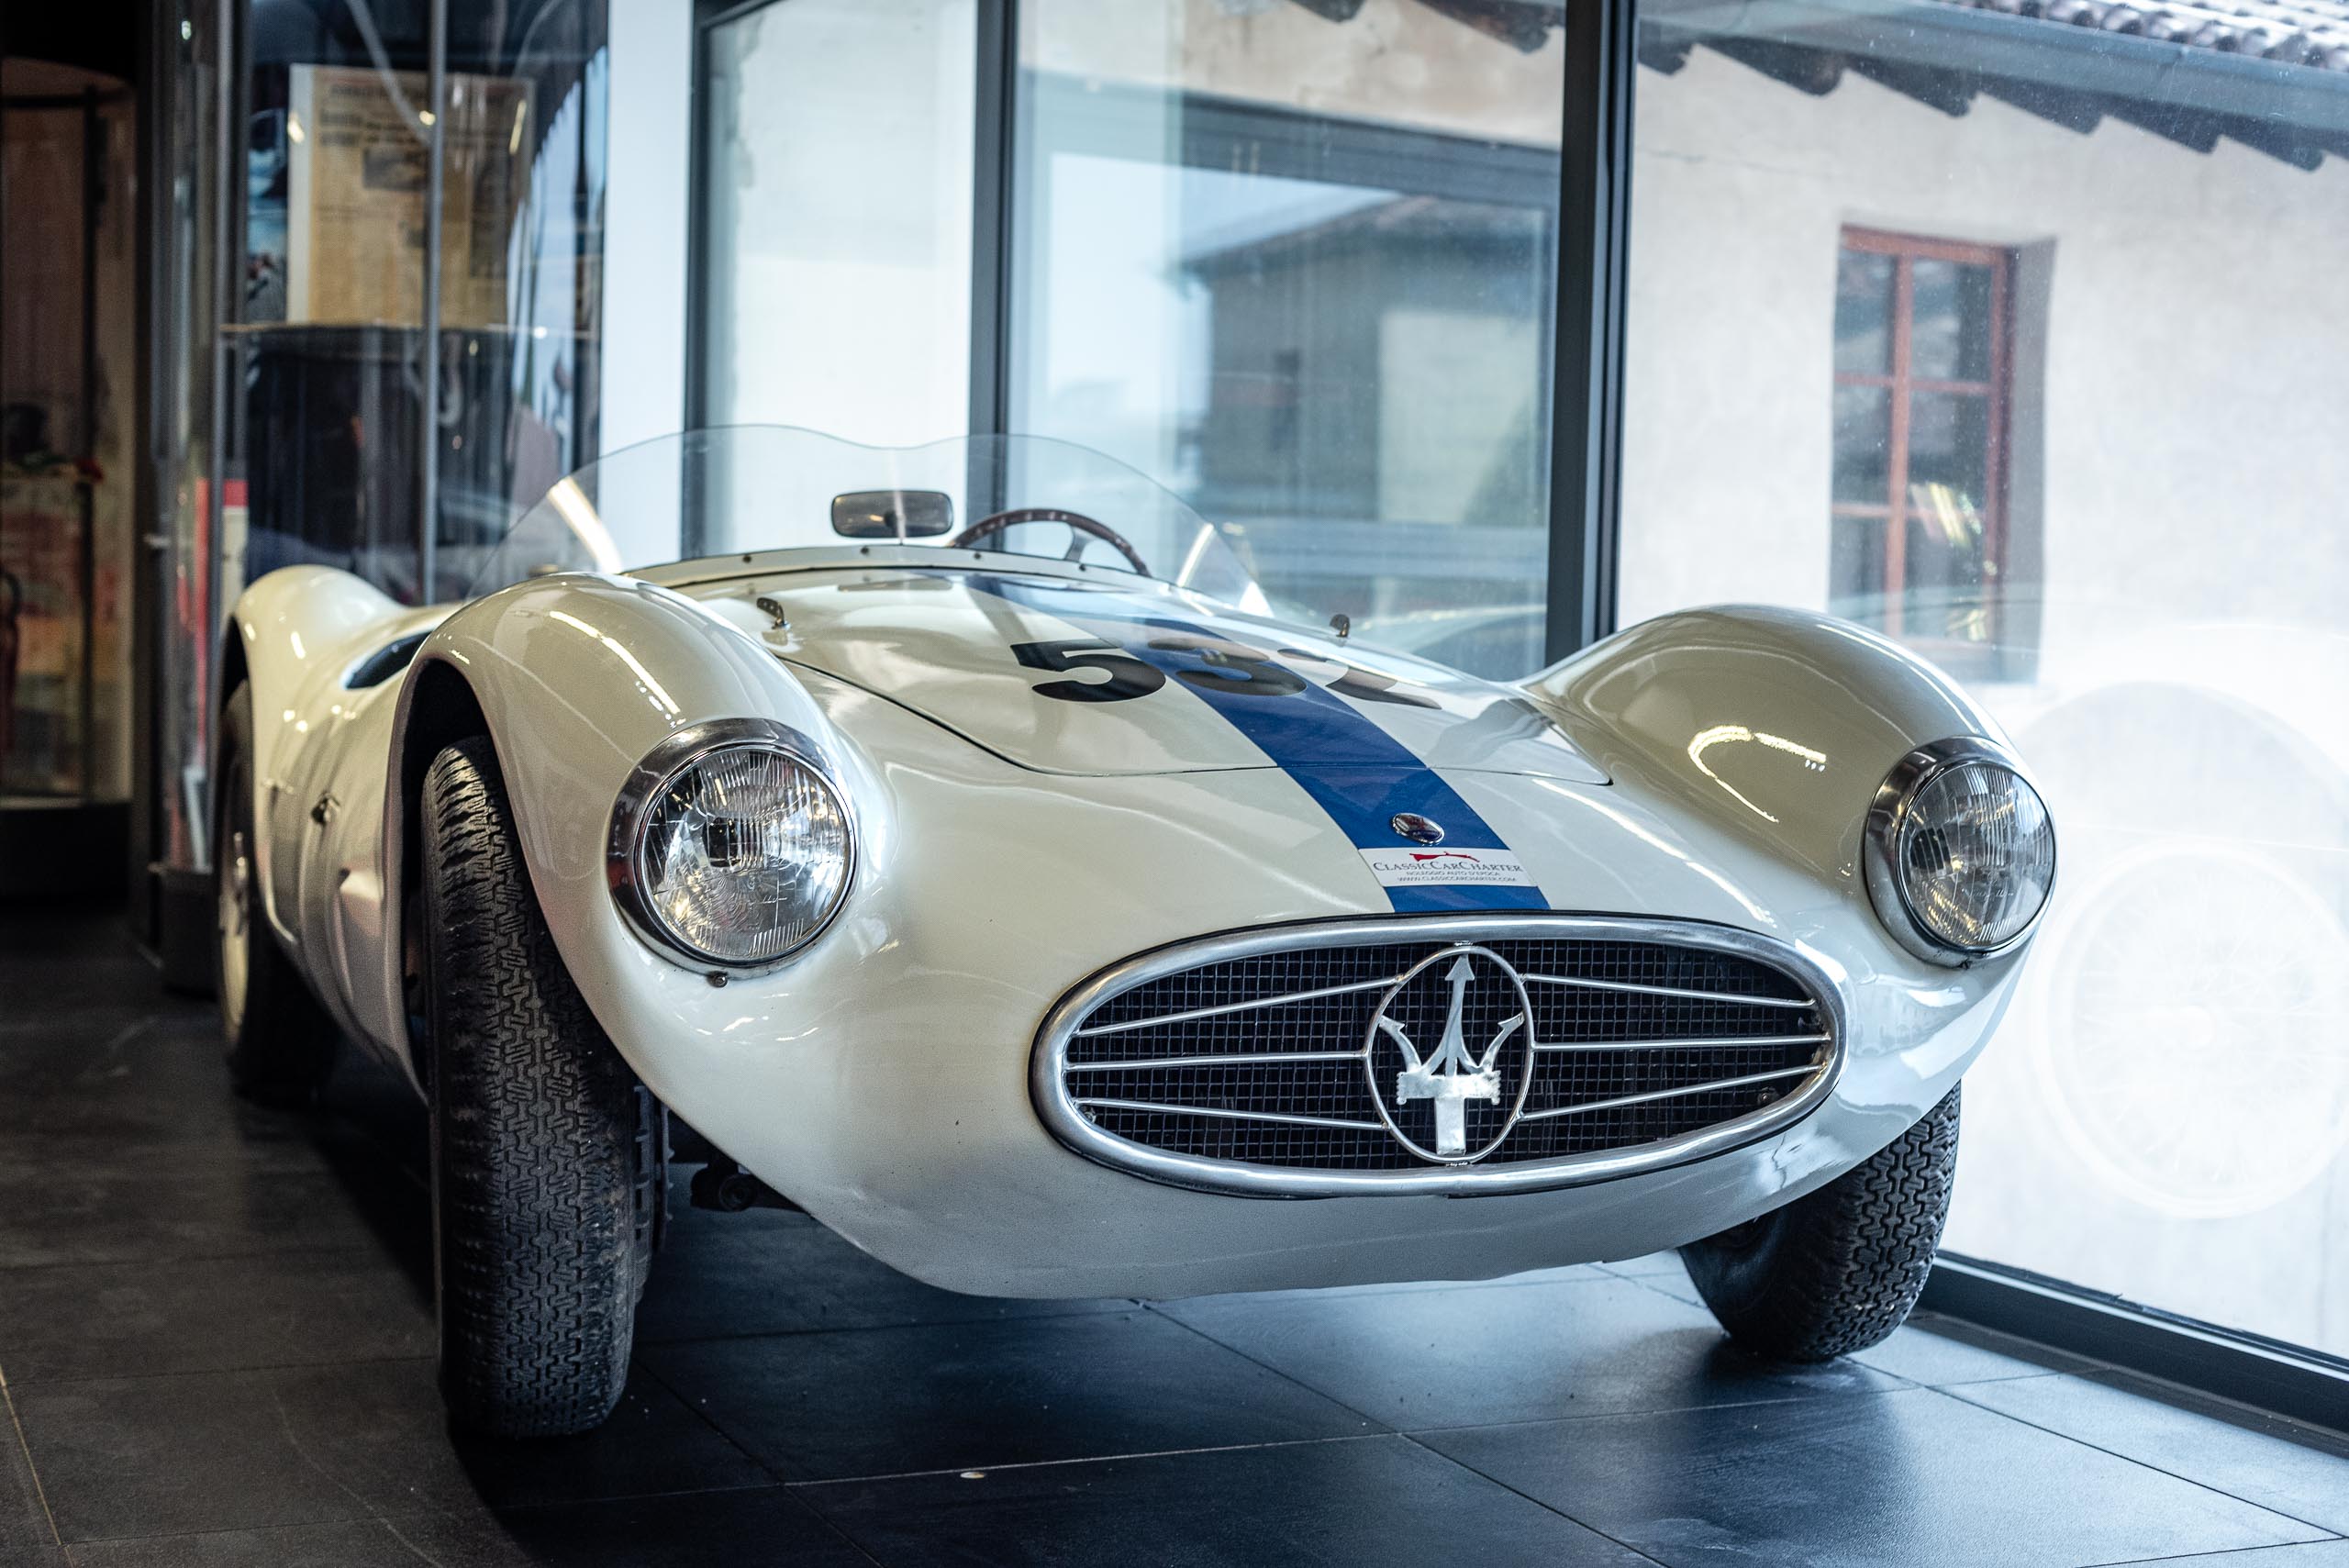 Maserati - Muzeum Mille Miglia